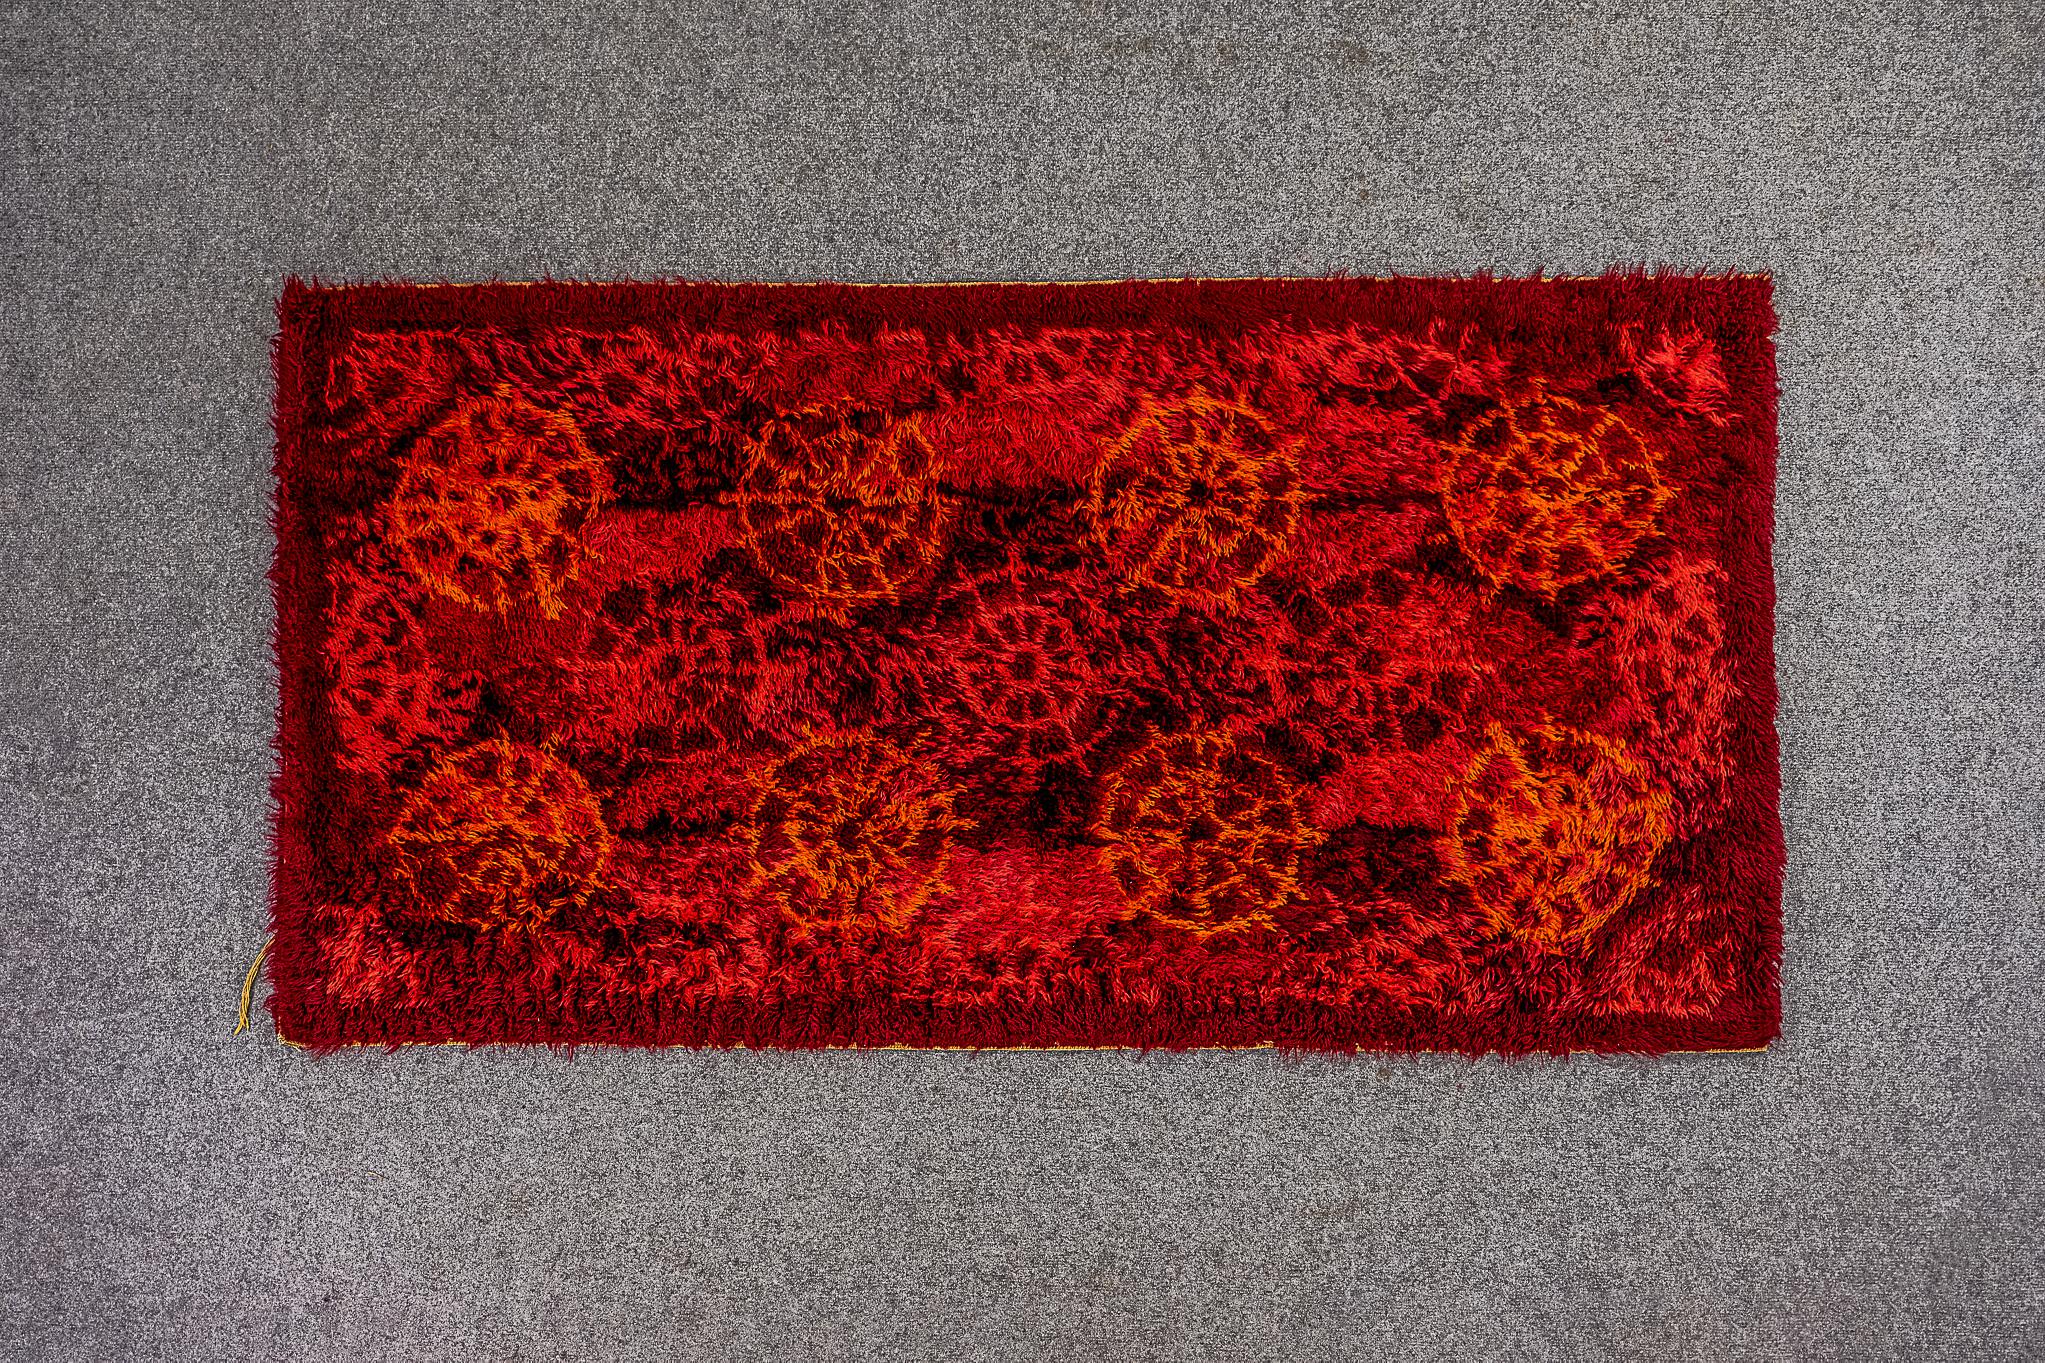 Tapis scandinave en laine, datant des années 1960. Ce tapis brillant et saisissant peut être utilisé comme revêtement mural ou comme tapis de sol. Le tapis représente un motif de roue abstrait et rythmique dans un jeu de couleurs rouge et marron.